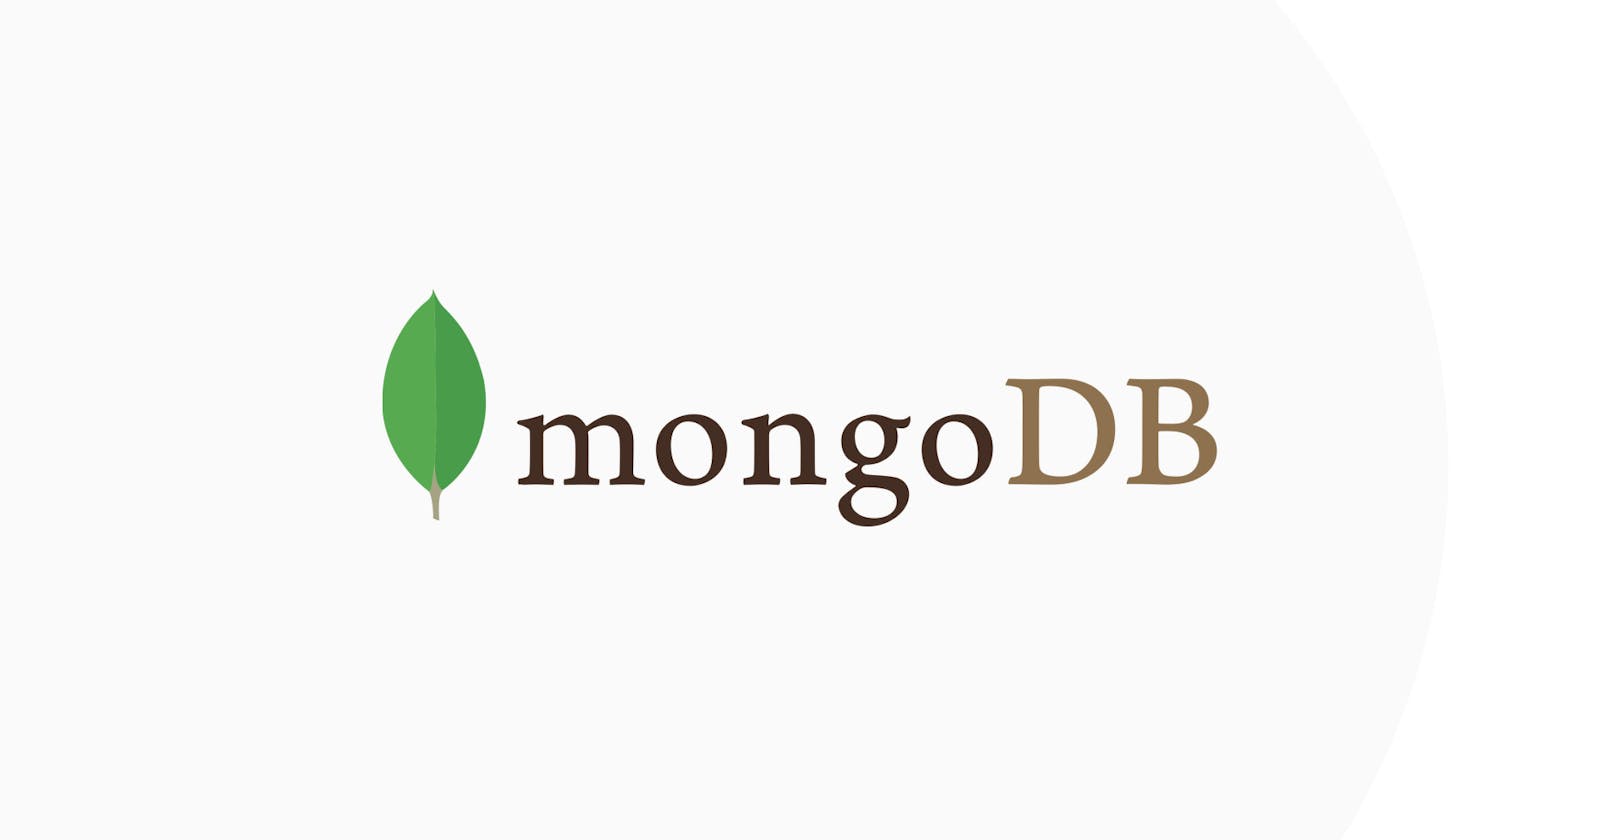 How to use MongoDB profiler